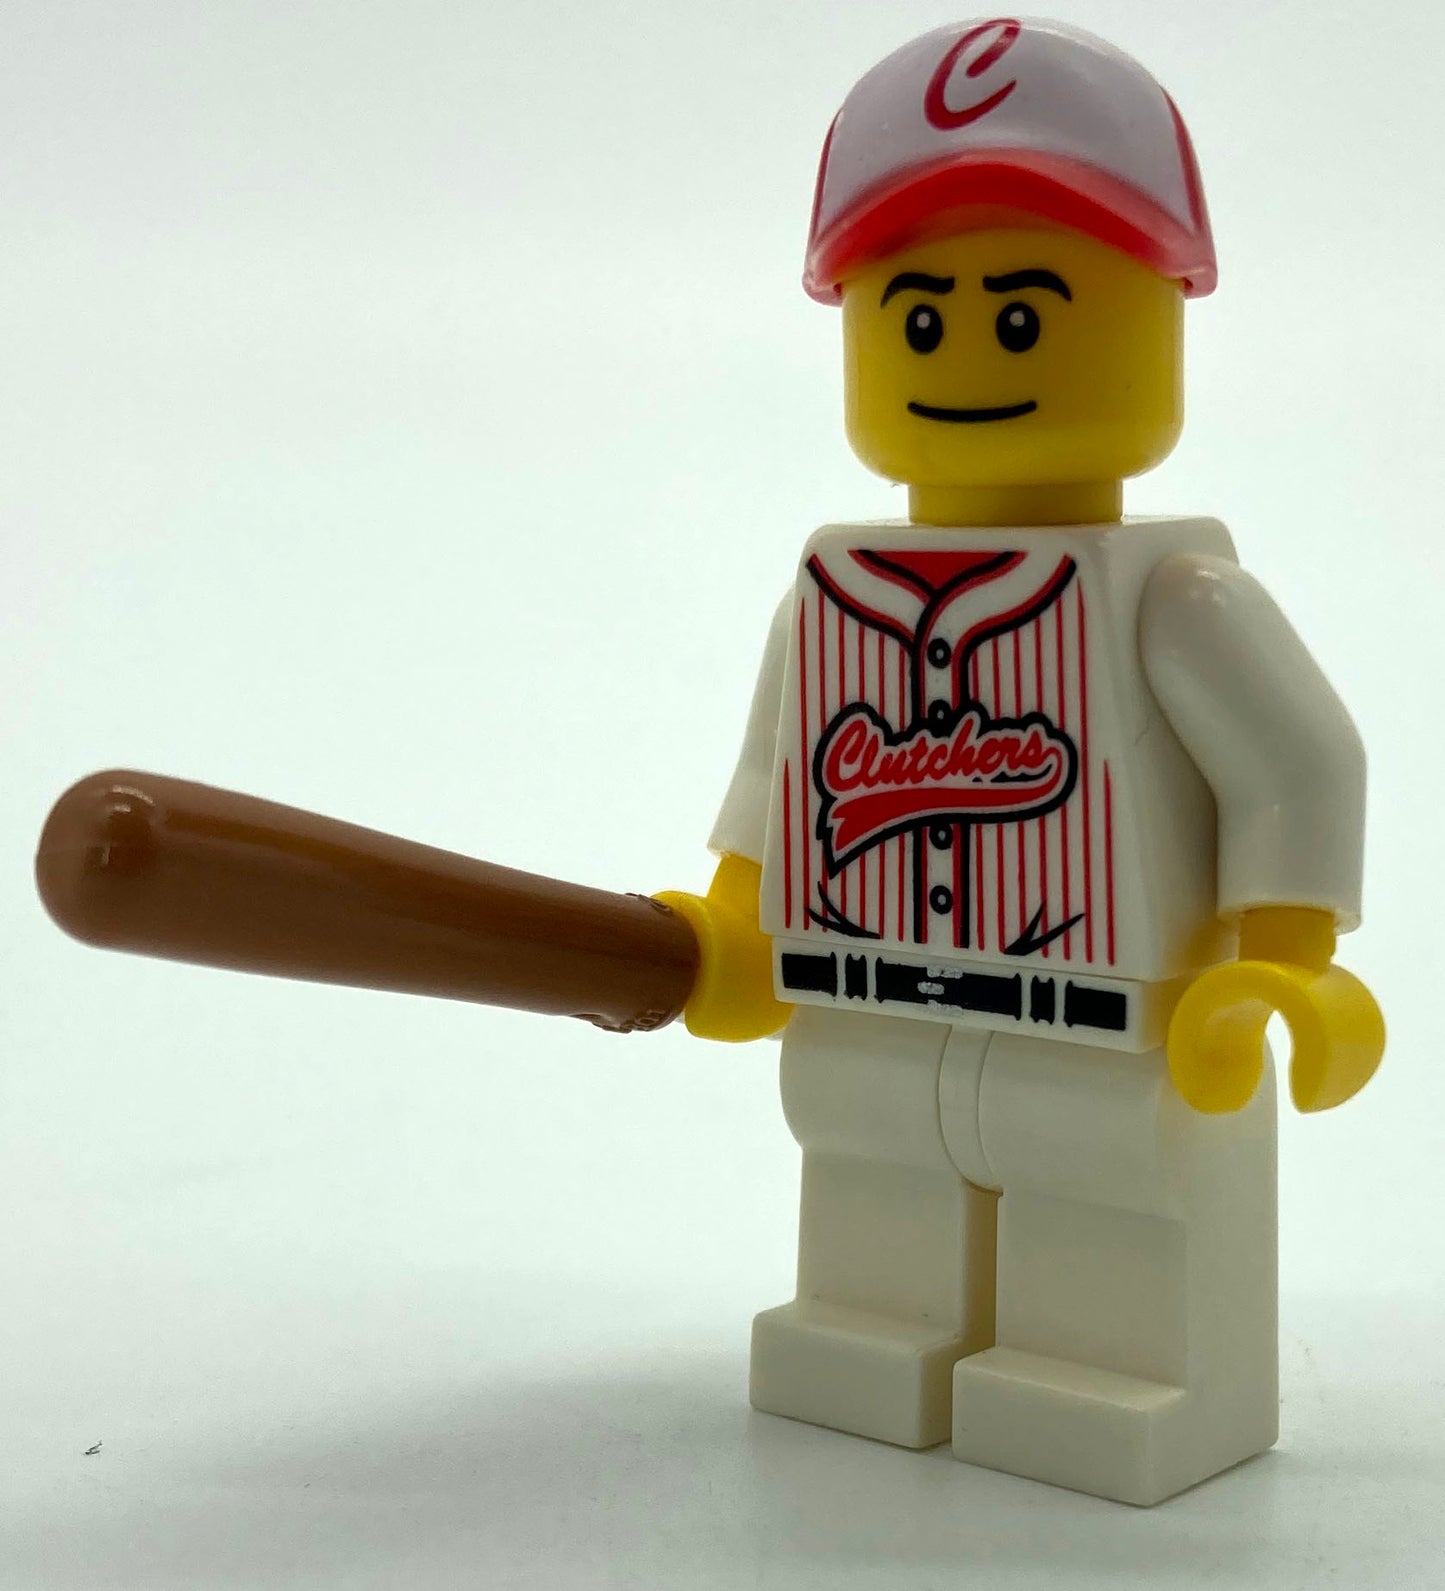 Series 03 - Baseball Player